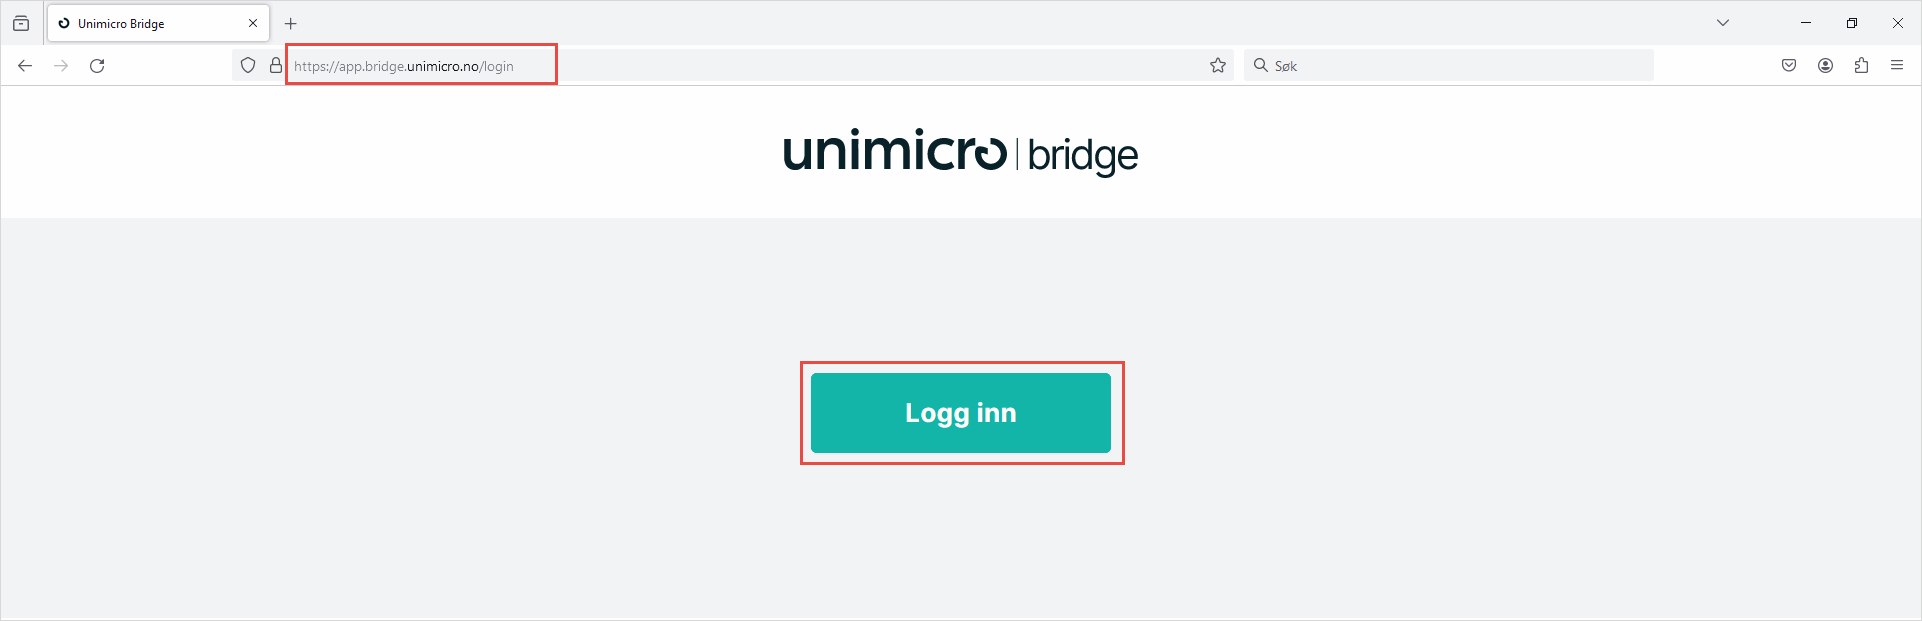 Innlogging til Unimicro Bridge_1.png